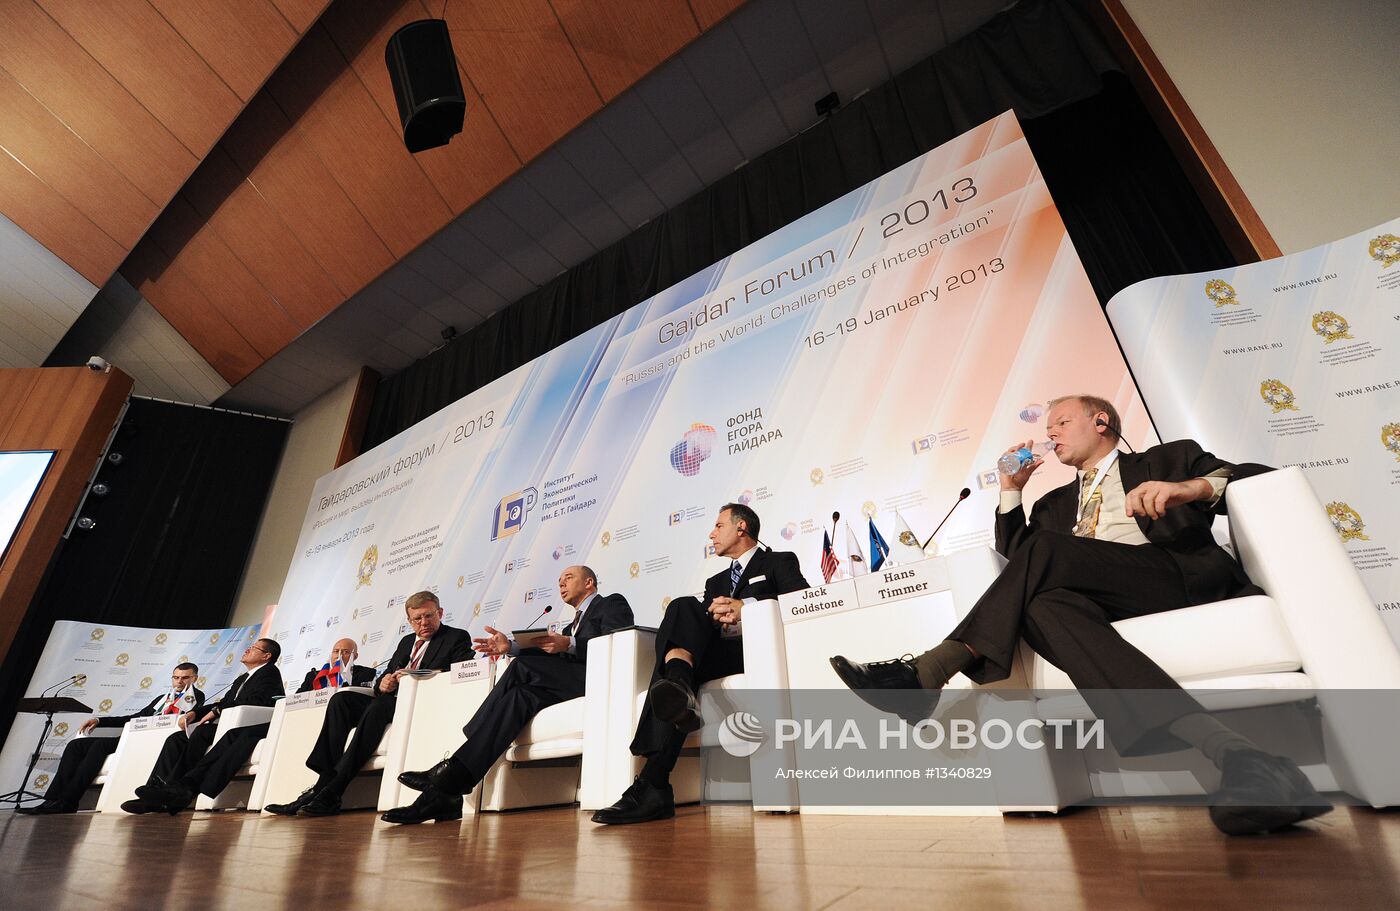 Гайдаровский форум 2013. Первый день